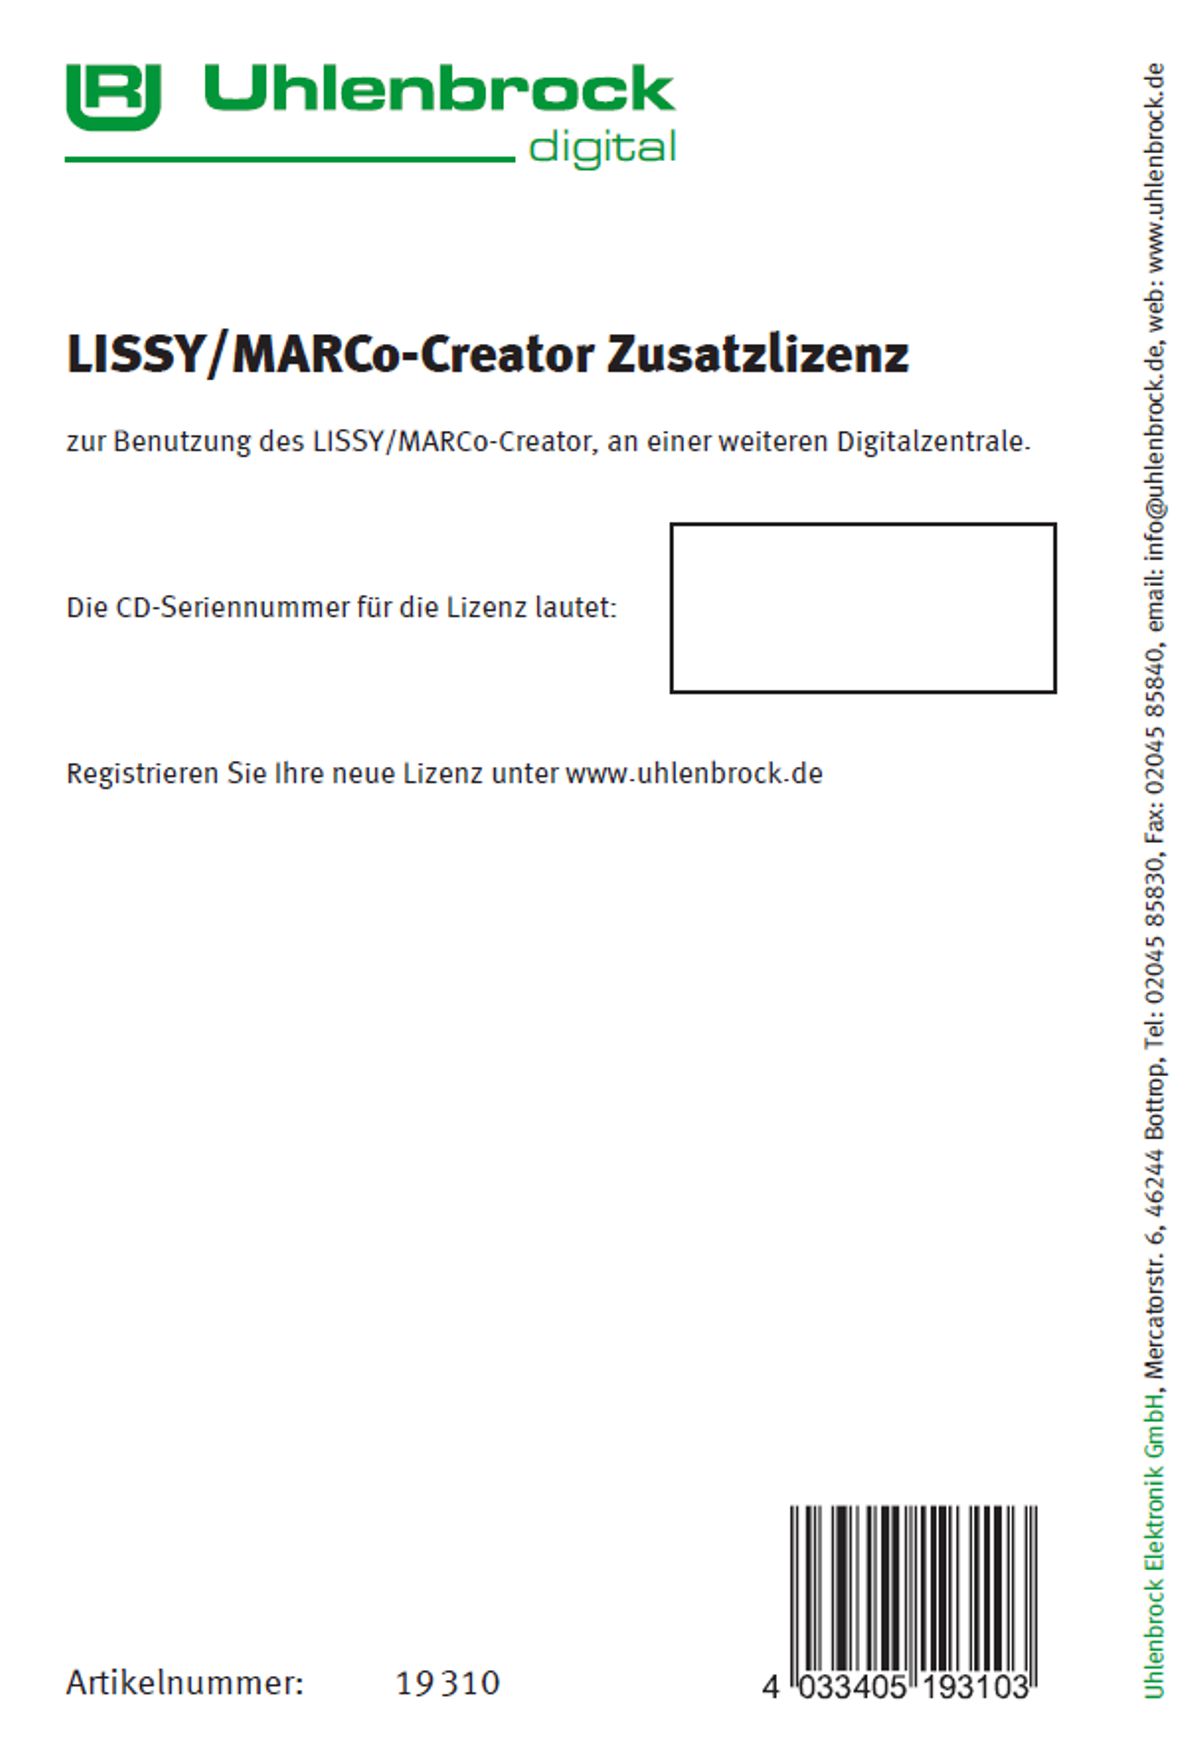 Uhlenbrock 19310 - LISSY/MARCo-Creator Zusatzlizenz